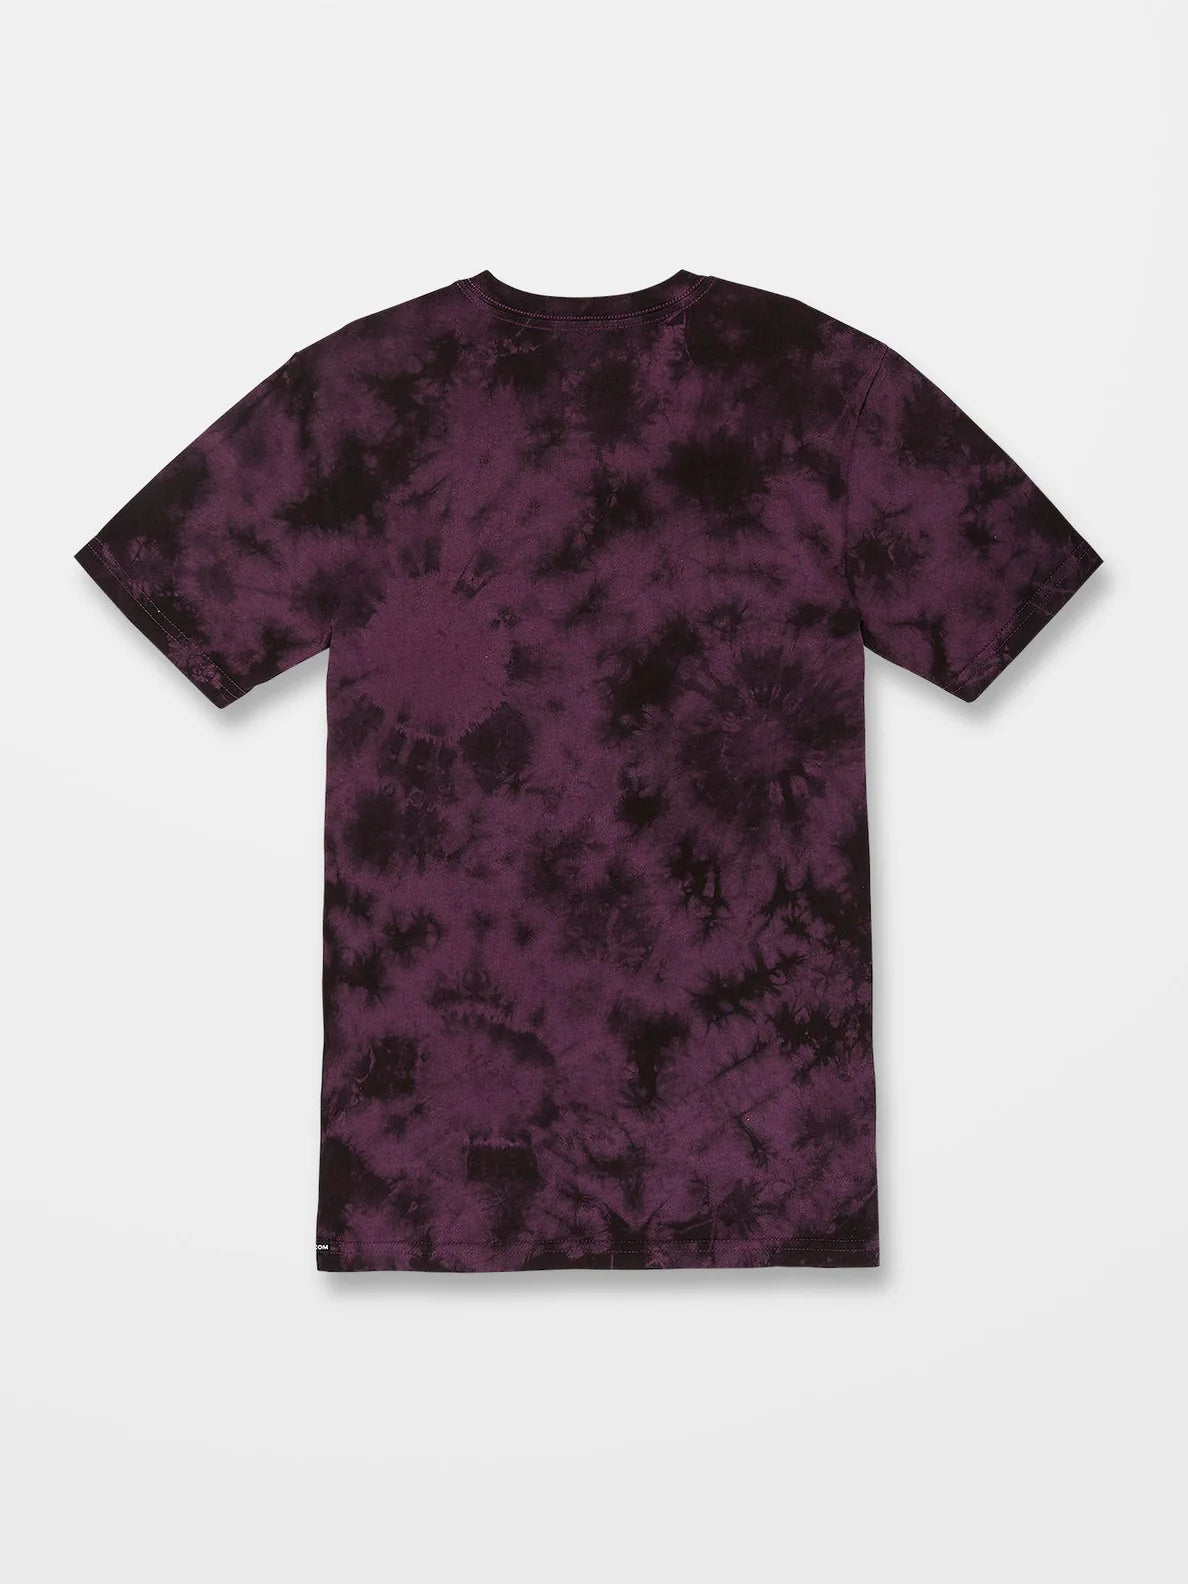 Camiseta niño Volcom Iconic Stone Dye Mulberry | Camisetas de niño | Volcom Shop | surfdevils.com